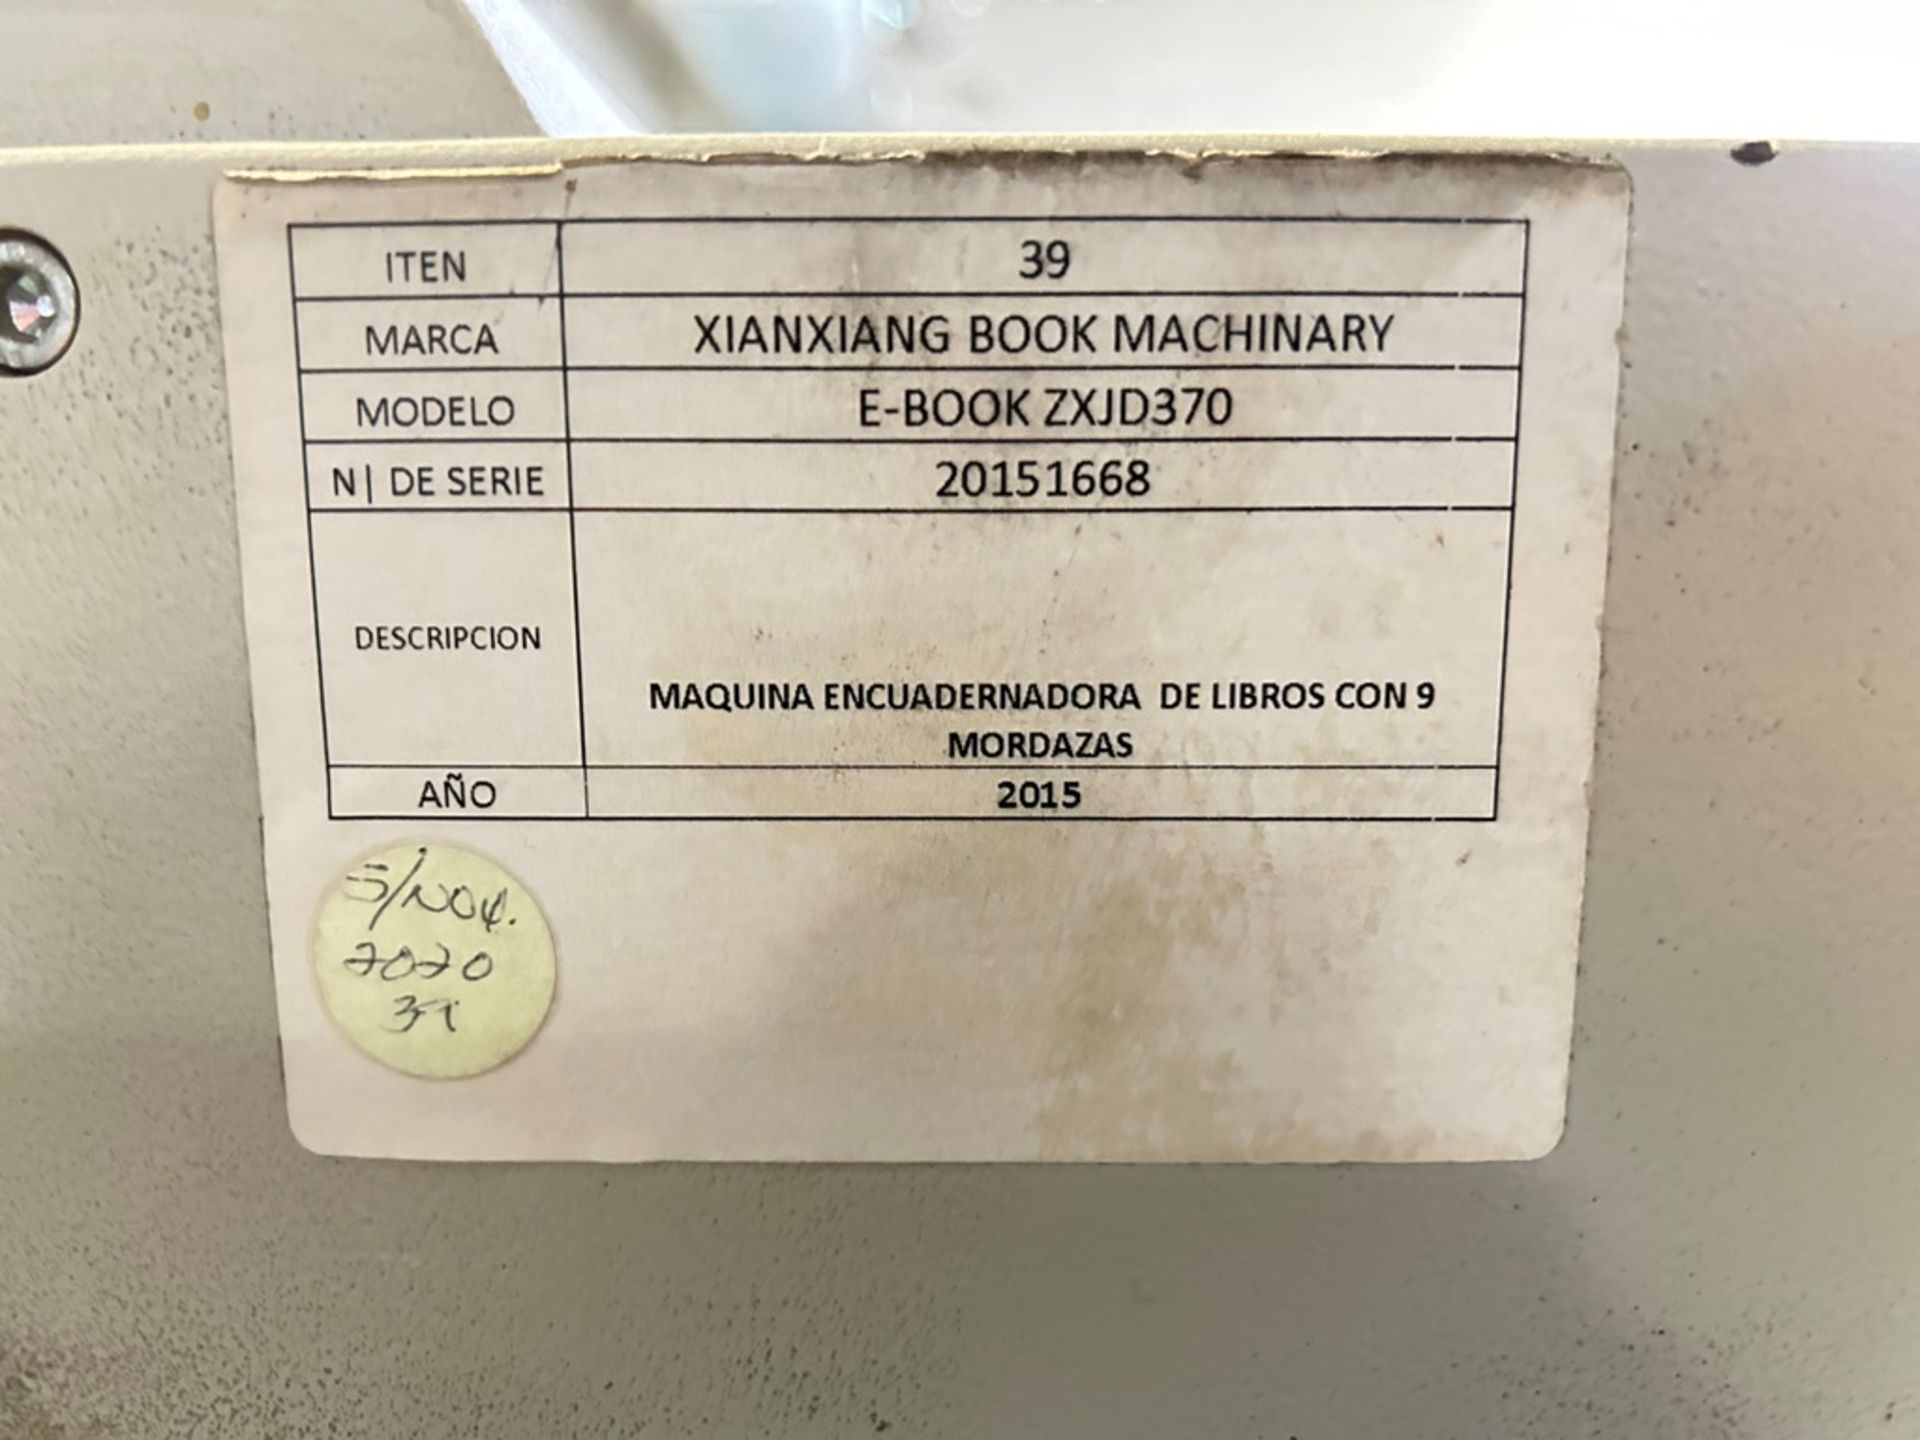 XINXIANG BOX MACHINARY 9 jaw book binding machine, Model E-BOOK ZXJD370, Serial No. 20151668, Year - Image 26 of 27